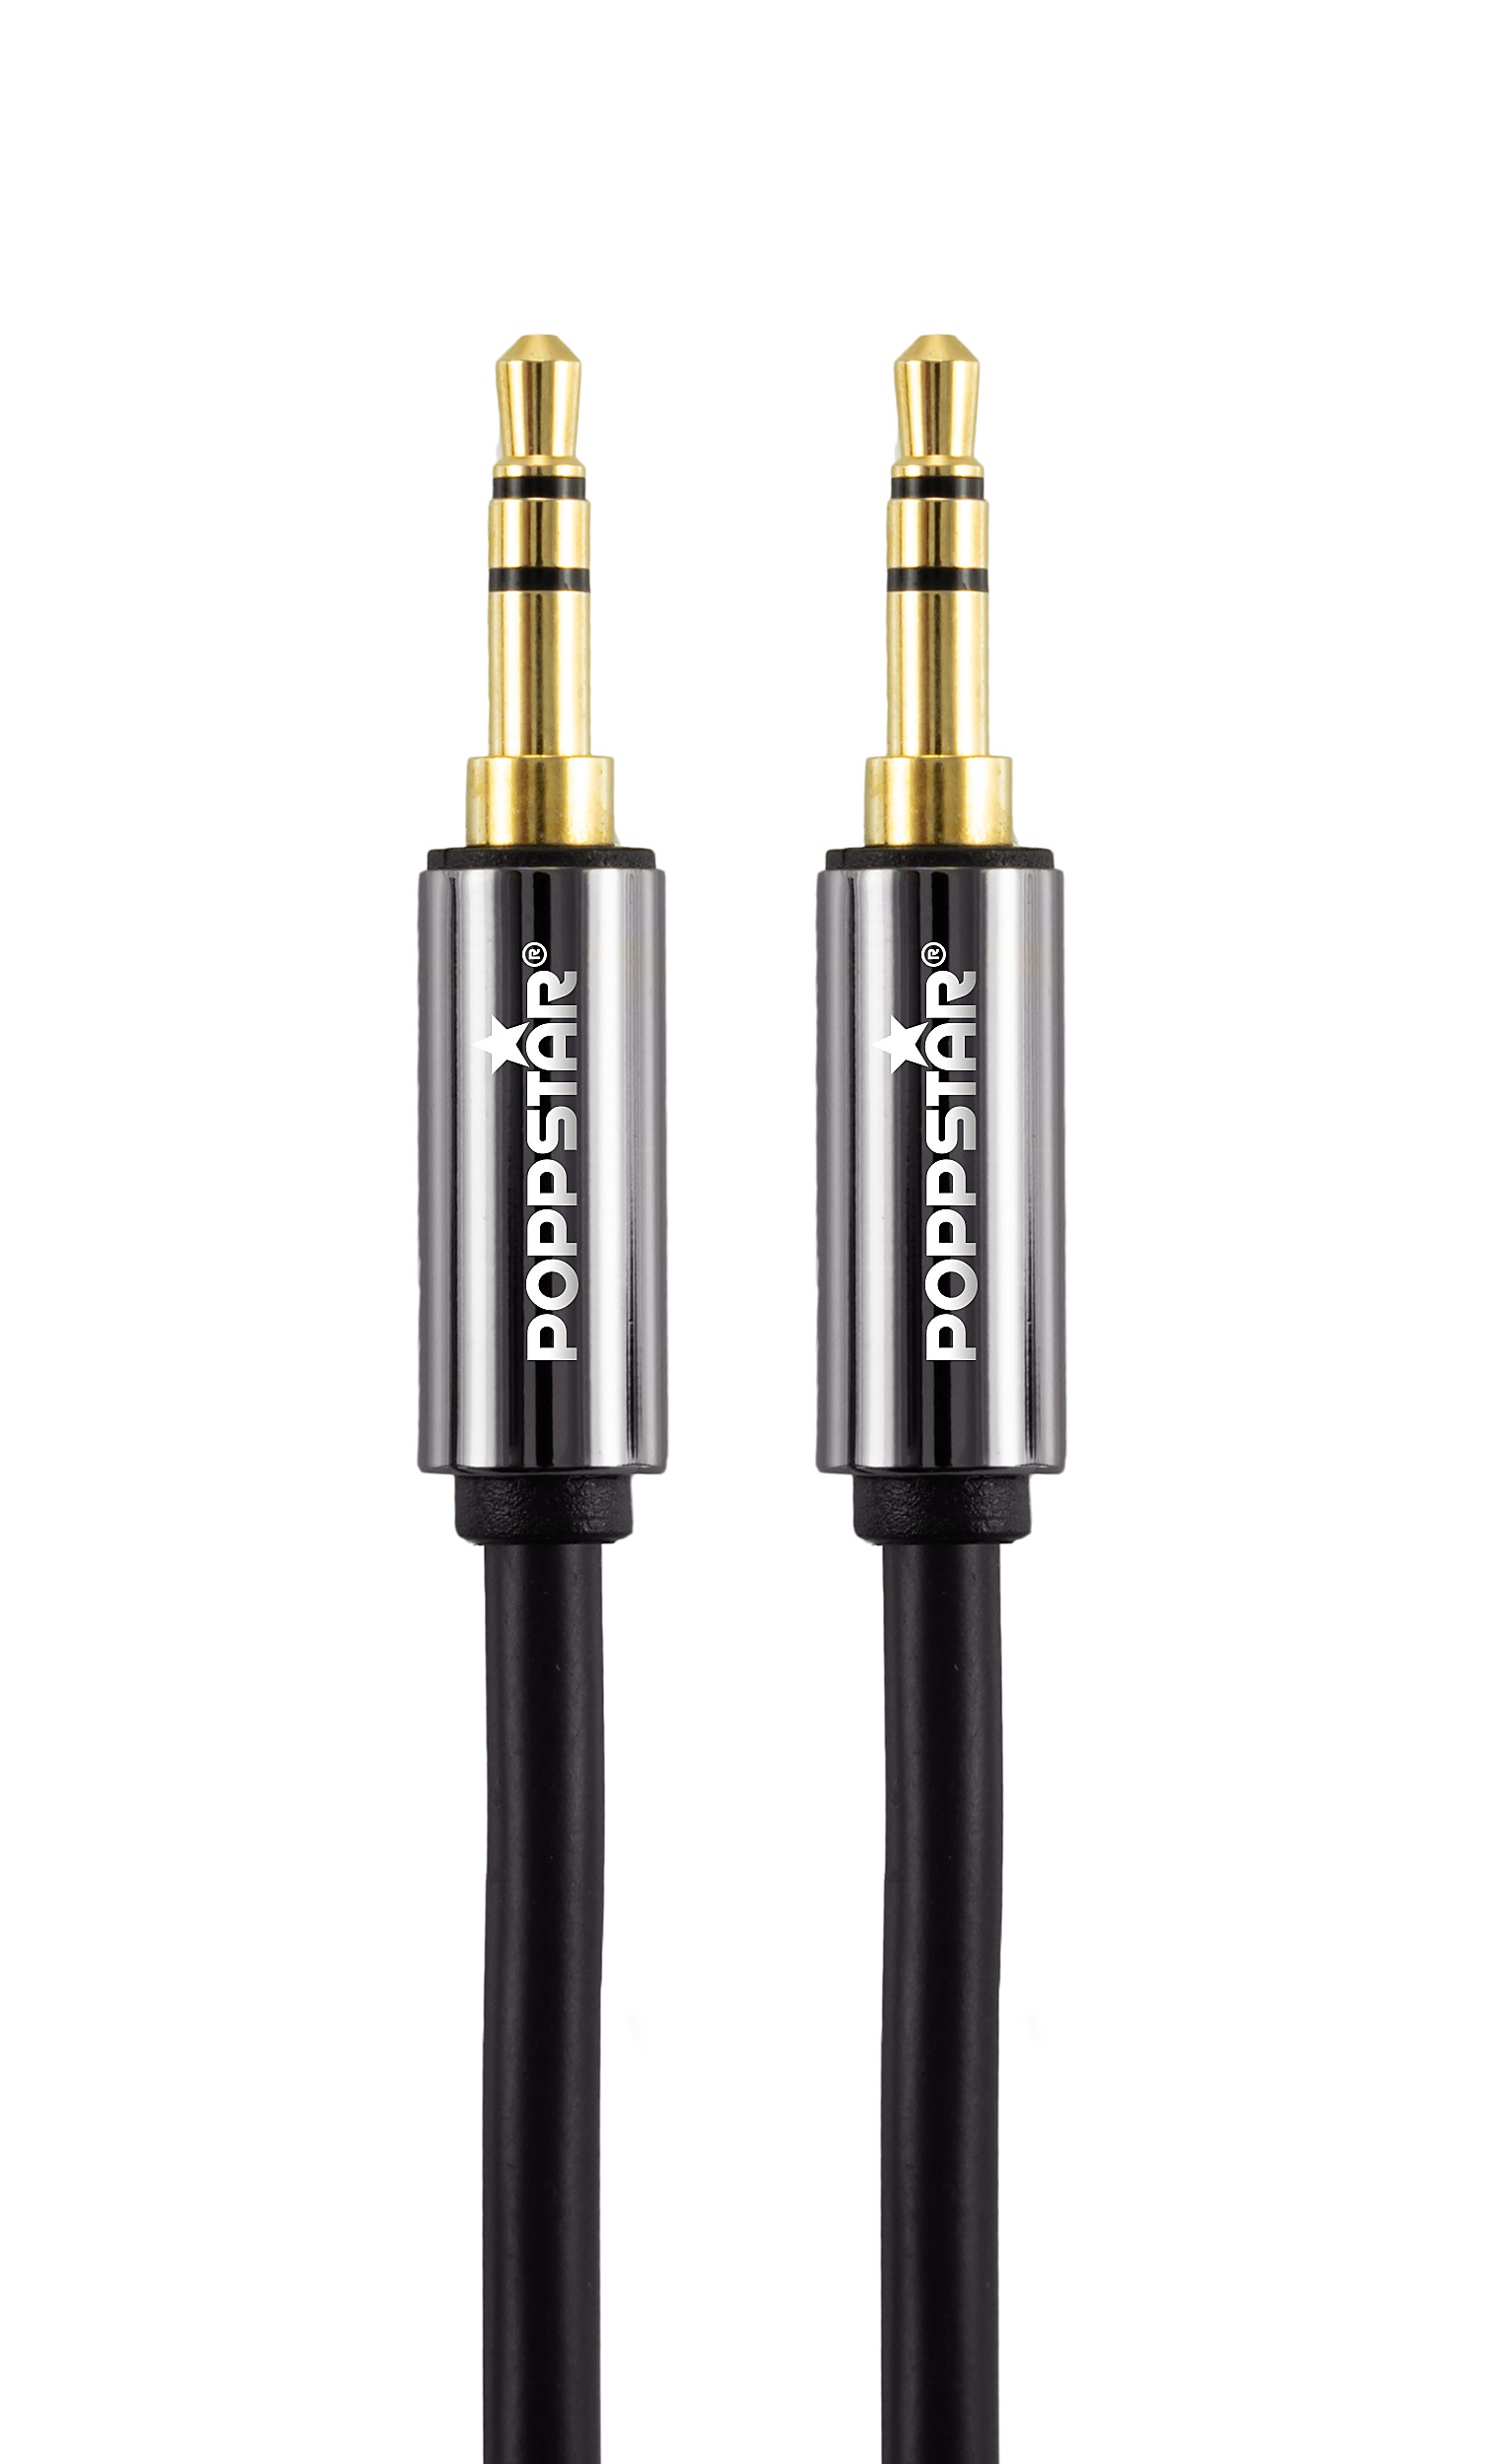 HQ Audio-Klinkenkabel 2 m mit Klinkenstecker 3,5 mm vergoldet